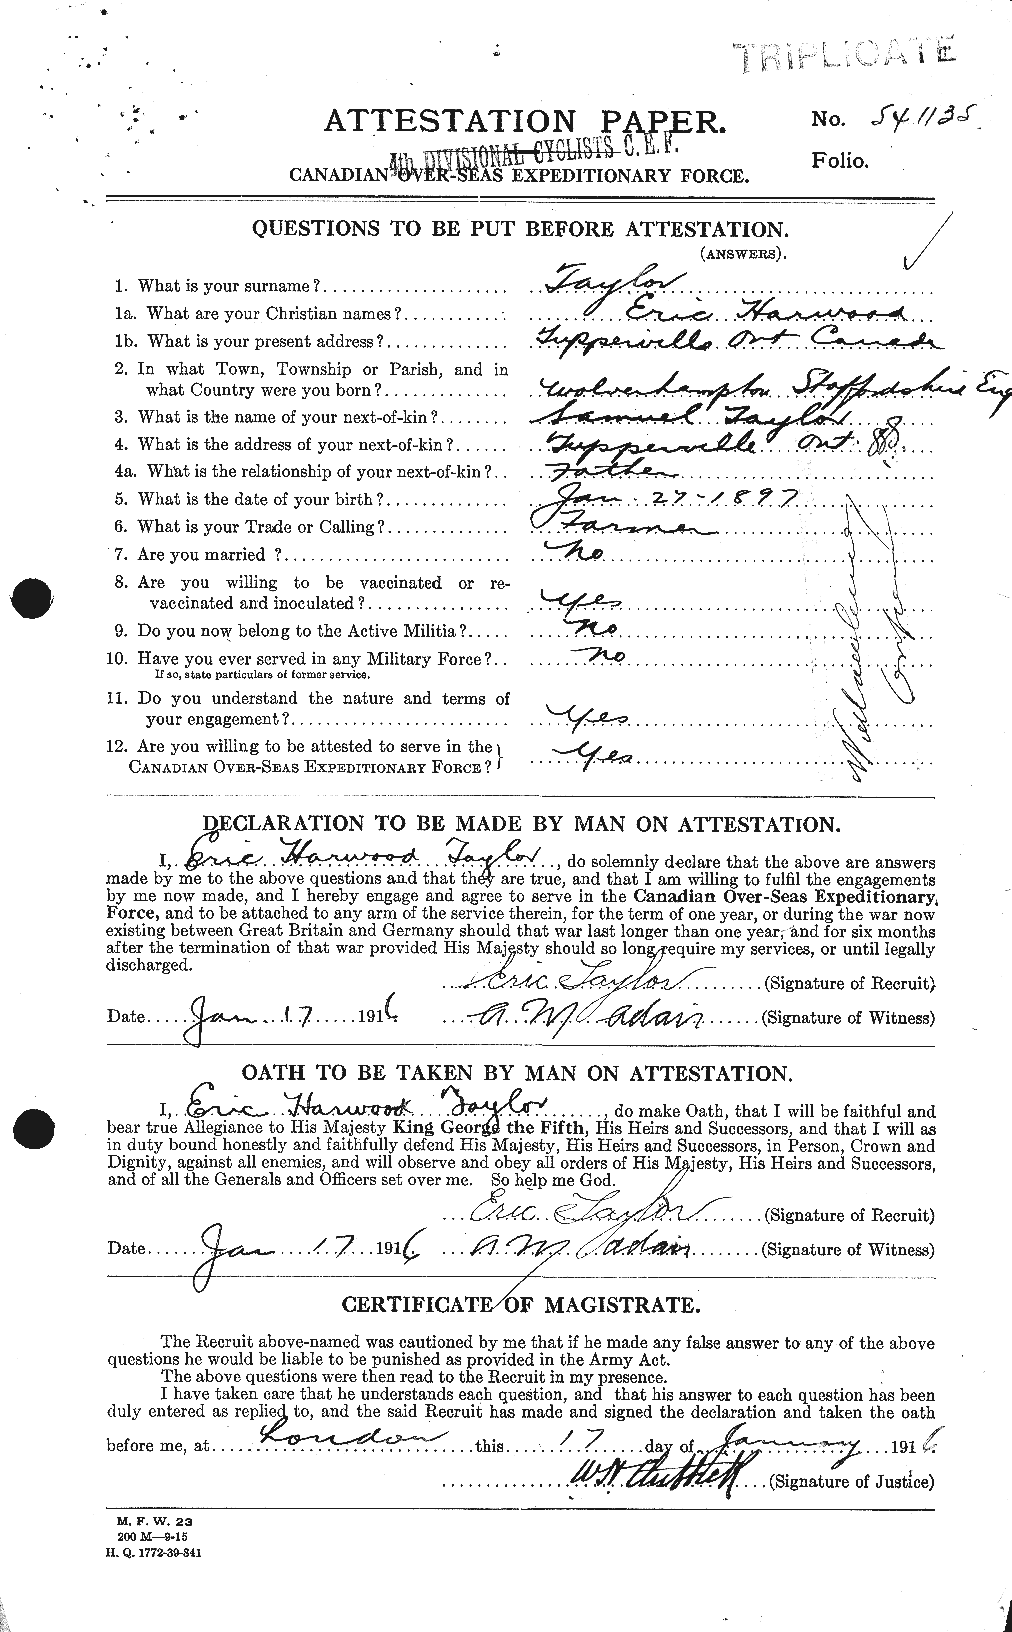 Dossiers du Personnel de la Première Guerre mondiale - CEC 627365a